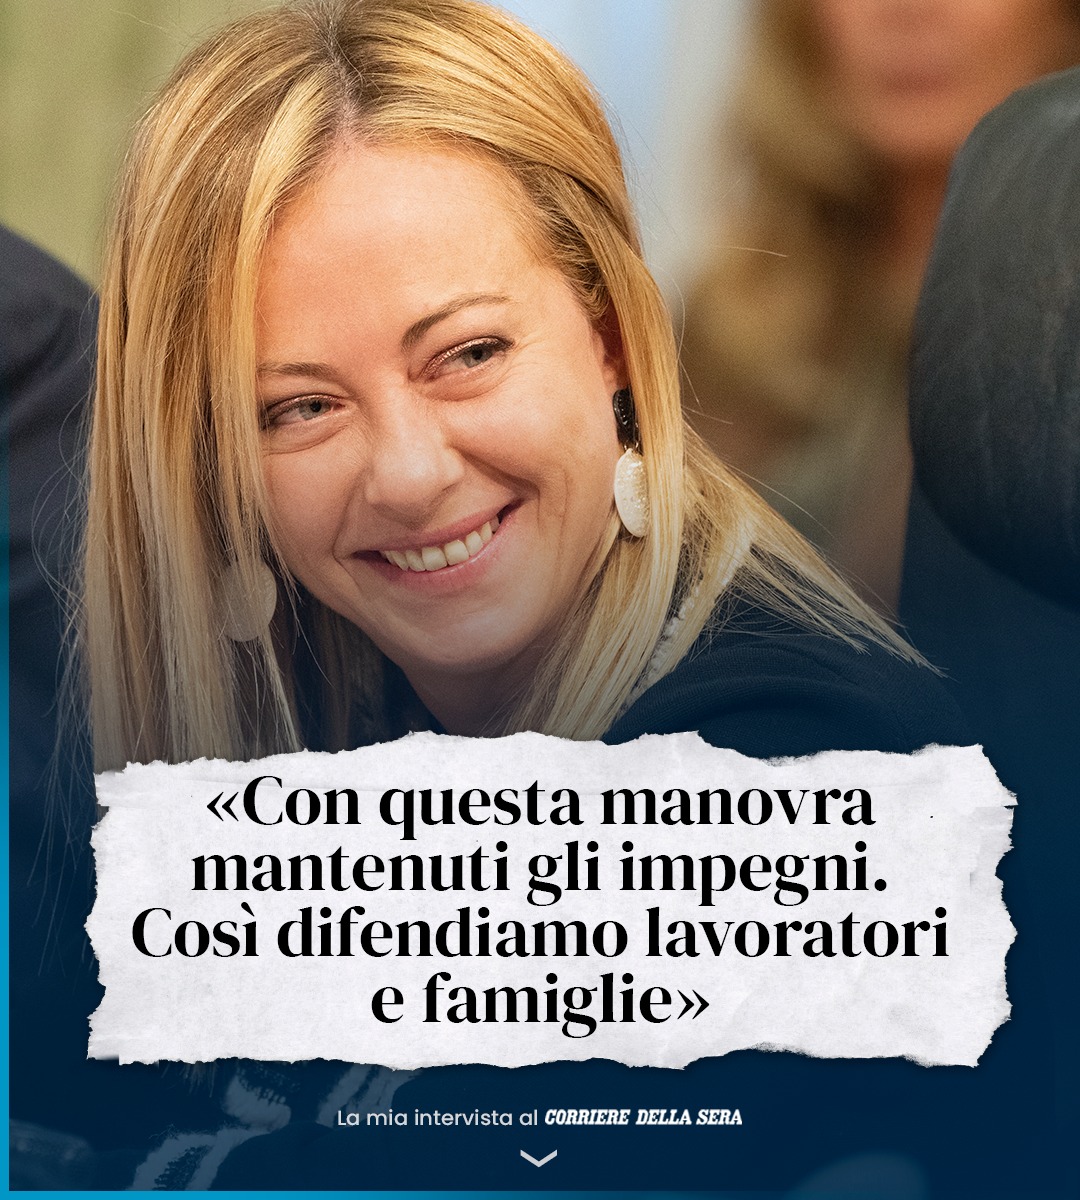 Giorgia Meloni: Di seguito la mia intervista di oggi al Corriere della Sera